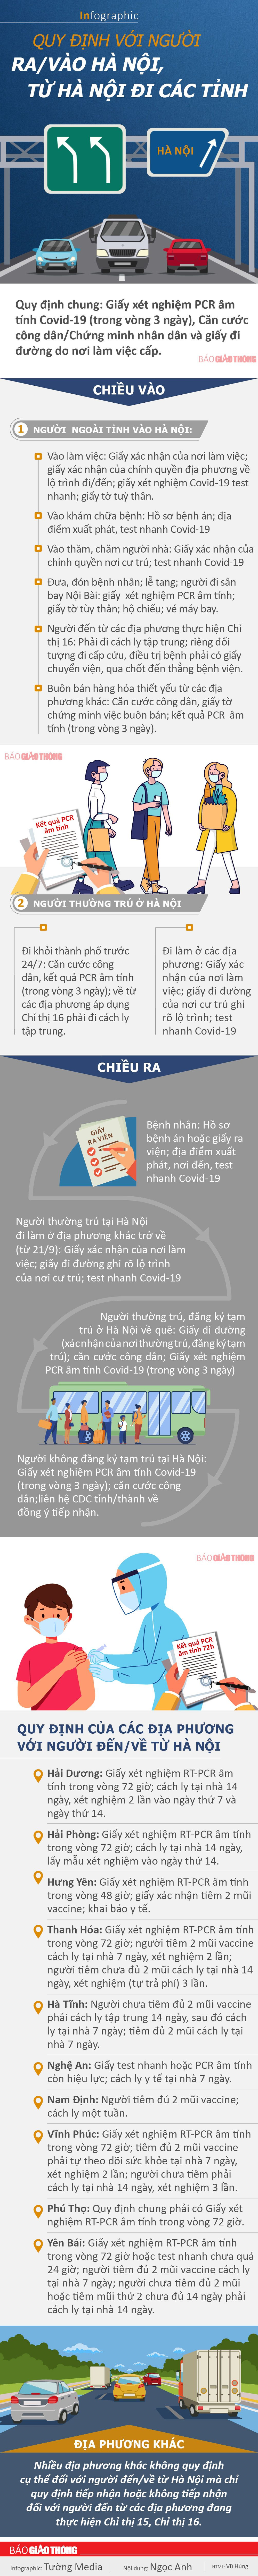 Infographic: Quy định với người ra/vào Hà Nội, từ Hà Nội đi các tỉnh - 1